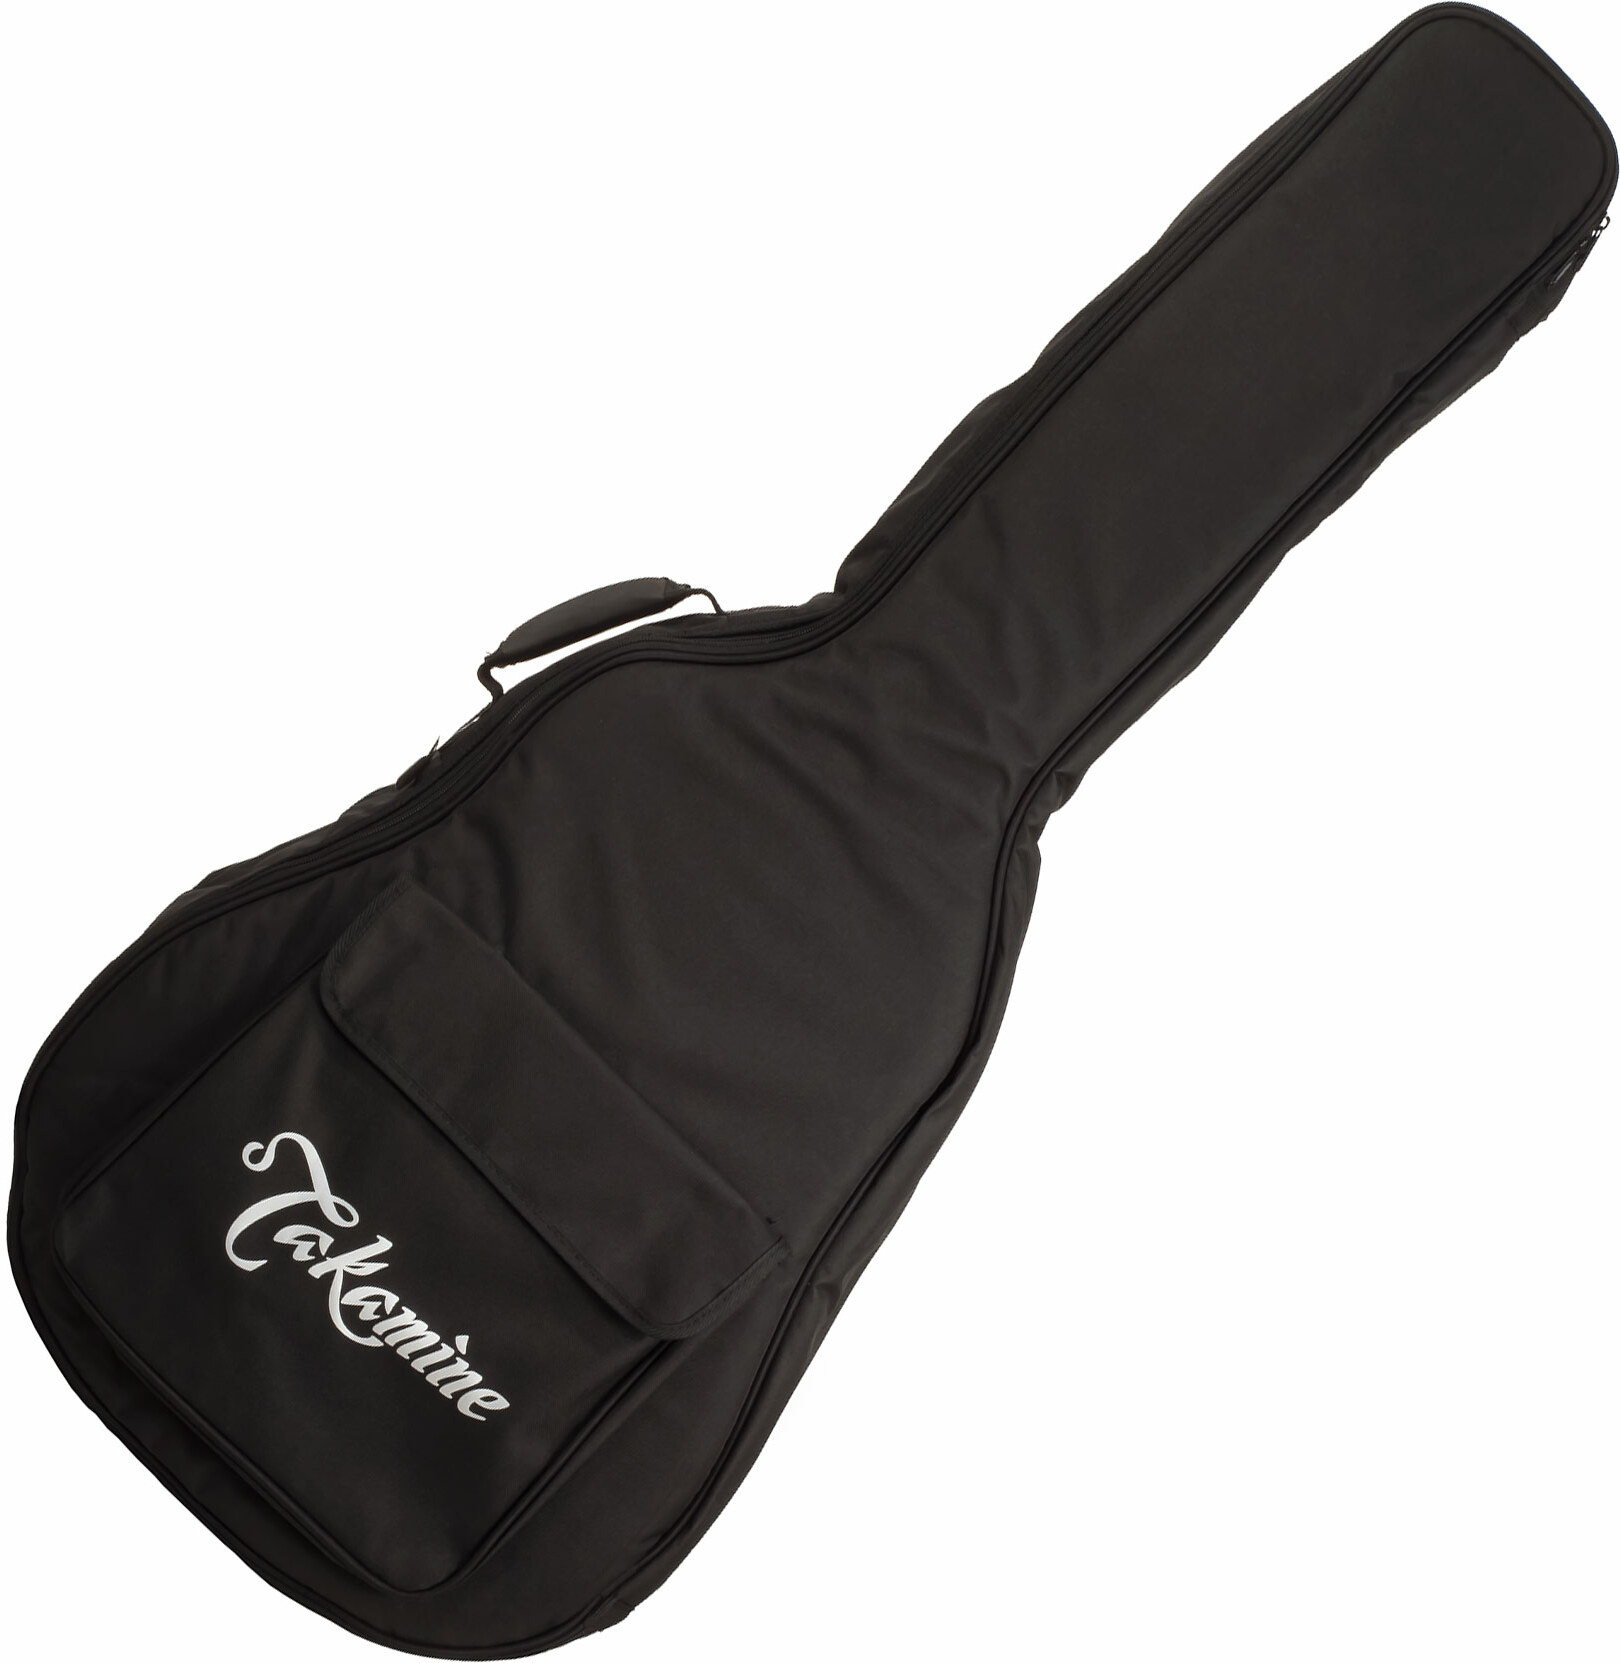 Takamine Gb-j Jumbo Acoustic Guitar Bag - Acoustic guitar gig bag - Main picture